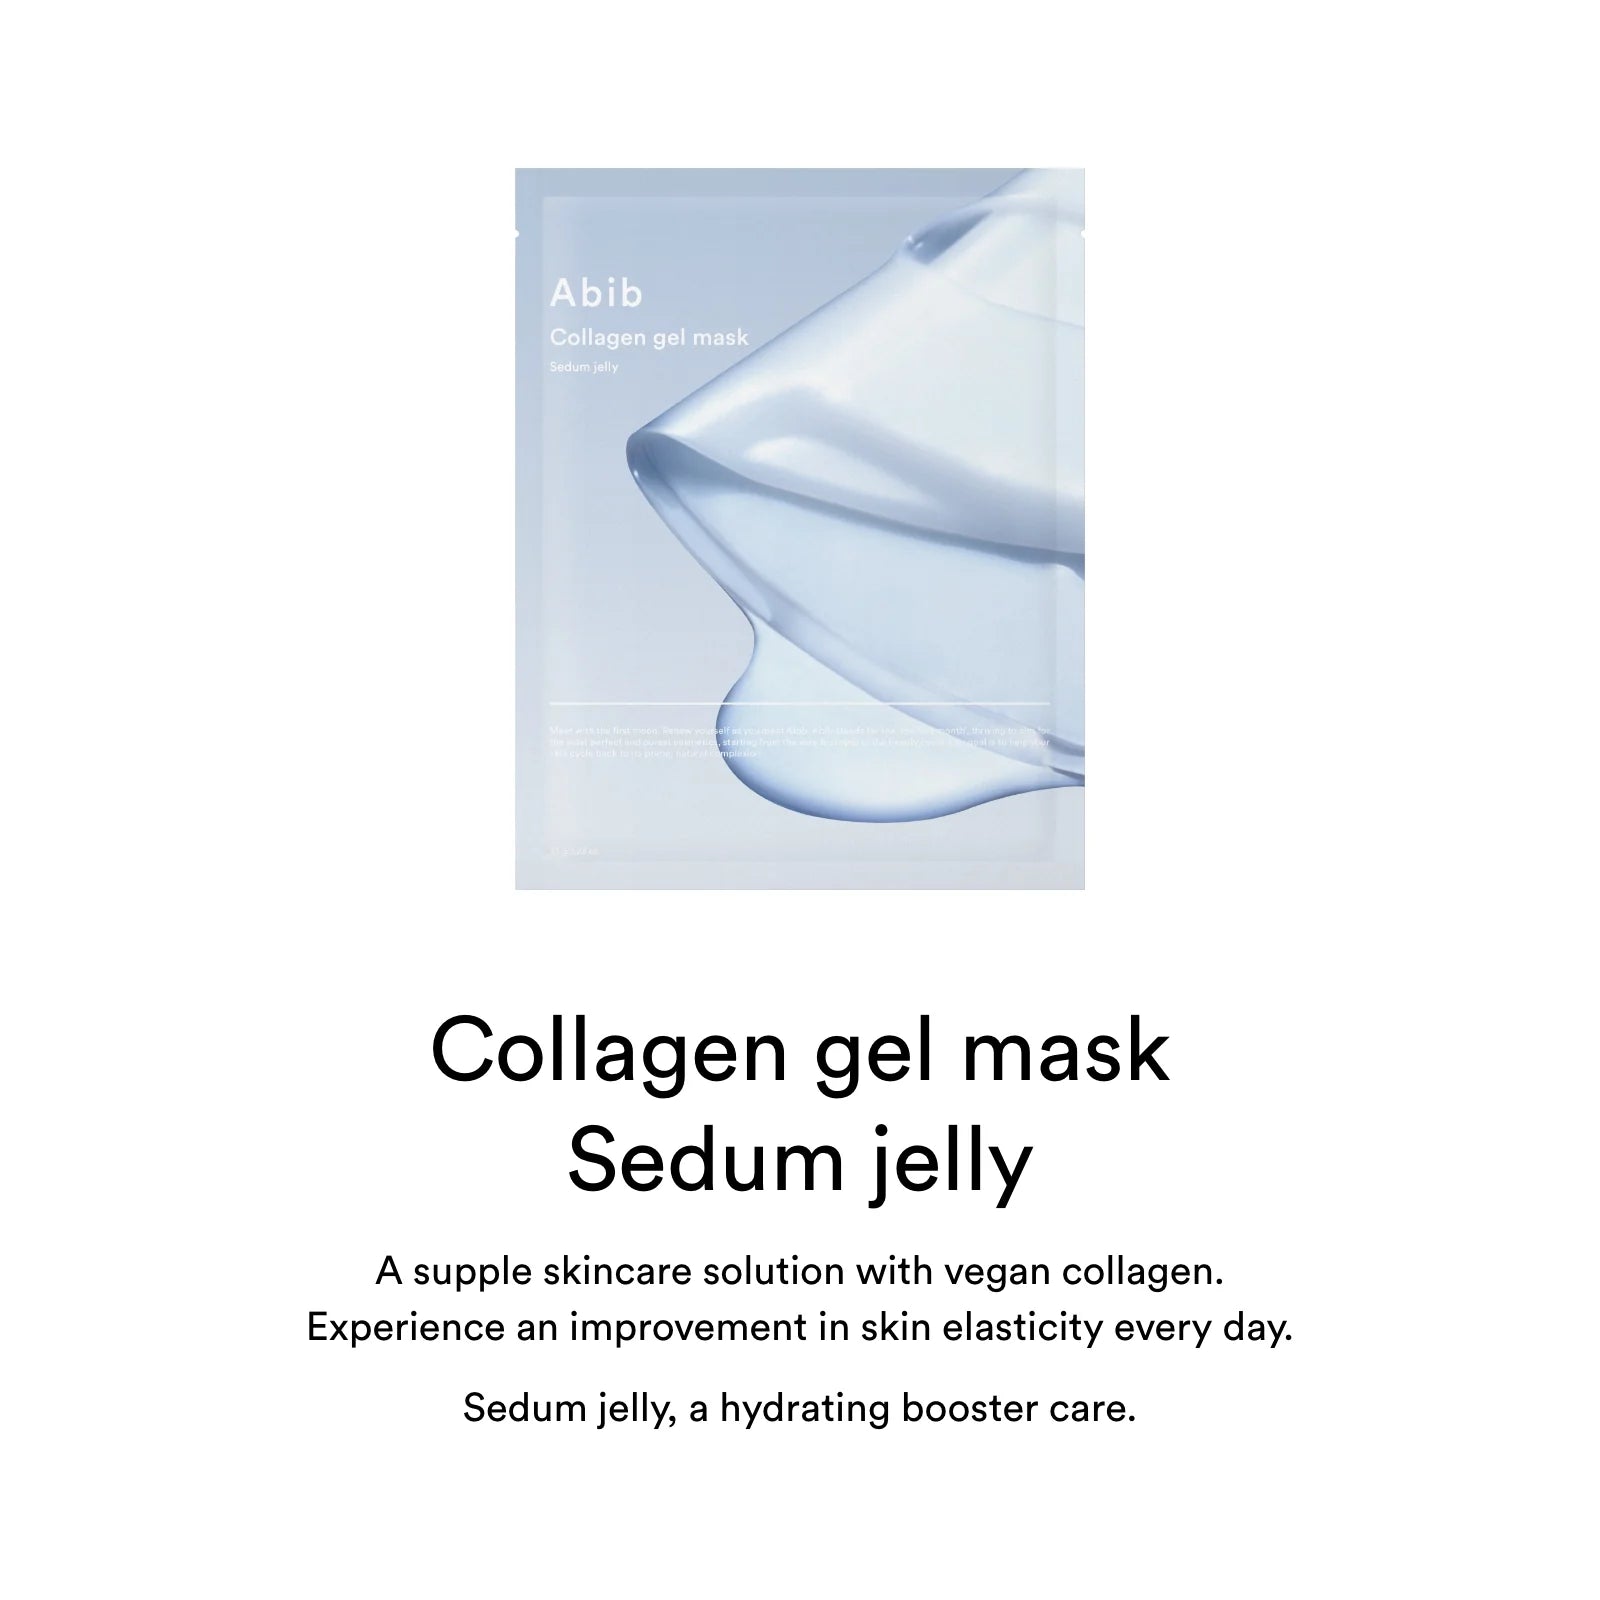 Abib Collagen Gel Mask Sedum Jelly Collagen Mask in a Sheet - 35g